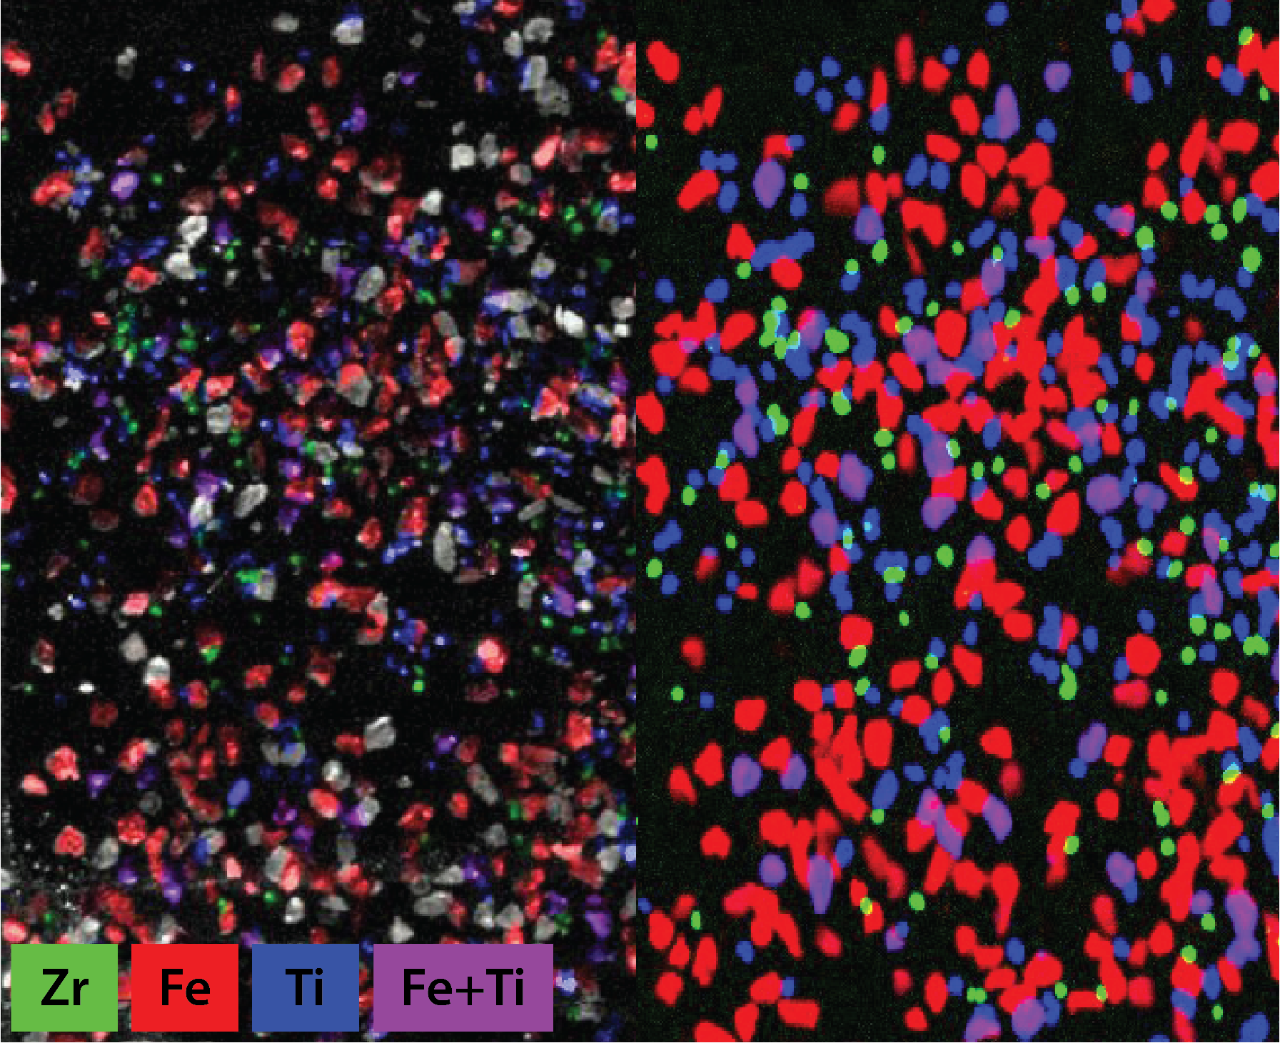 快速扫描micro-XRF元素地图重矿物精矿。左:元素上覆的视频马赛克图像样本;右:元素